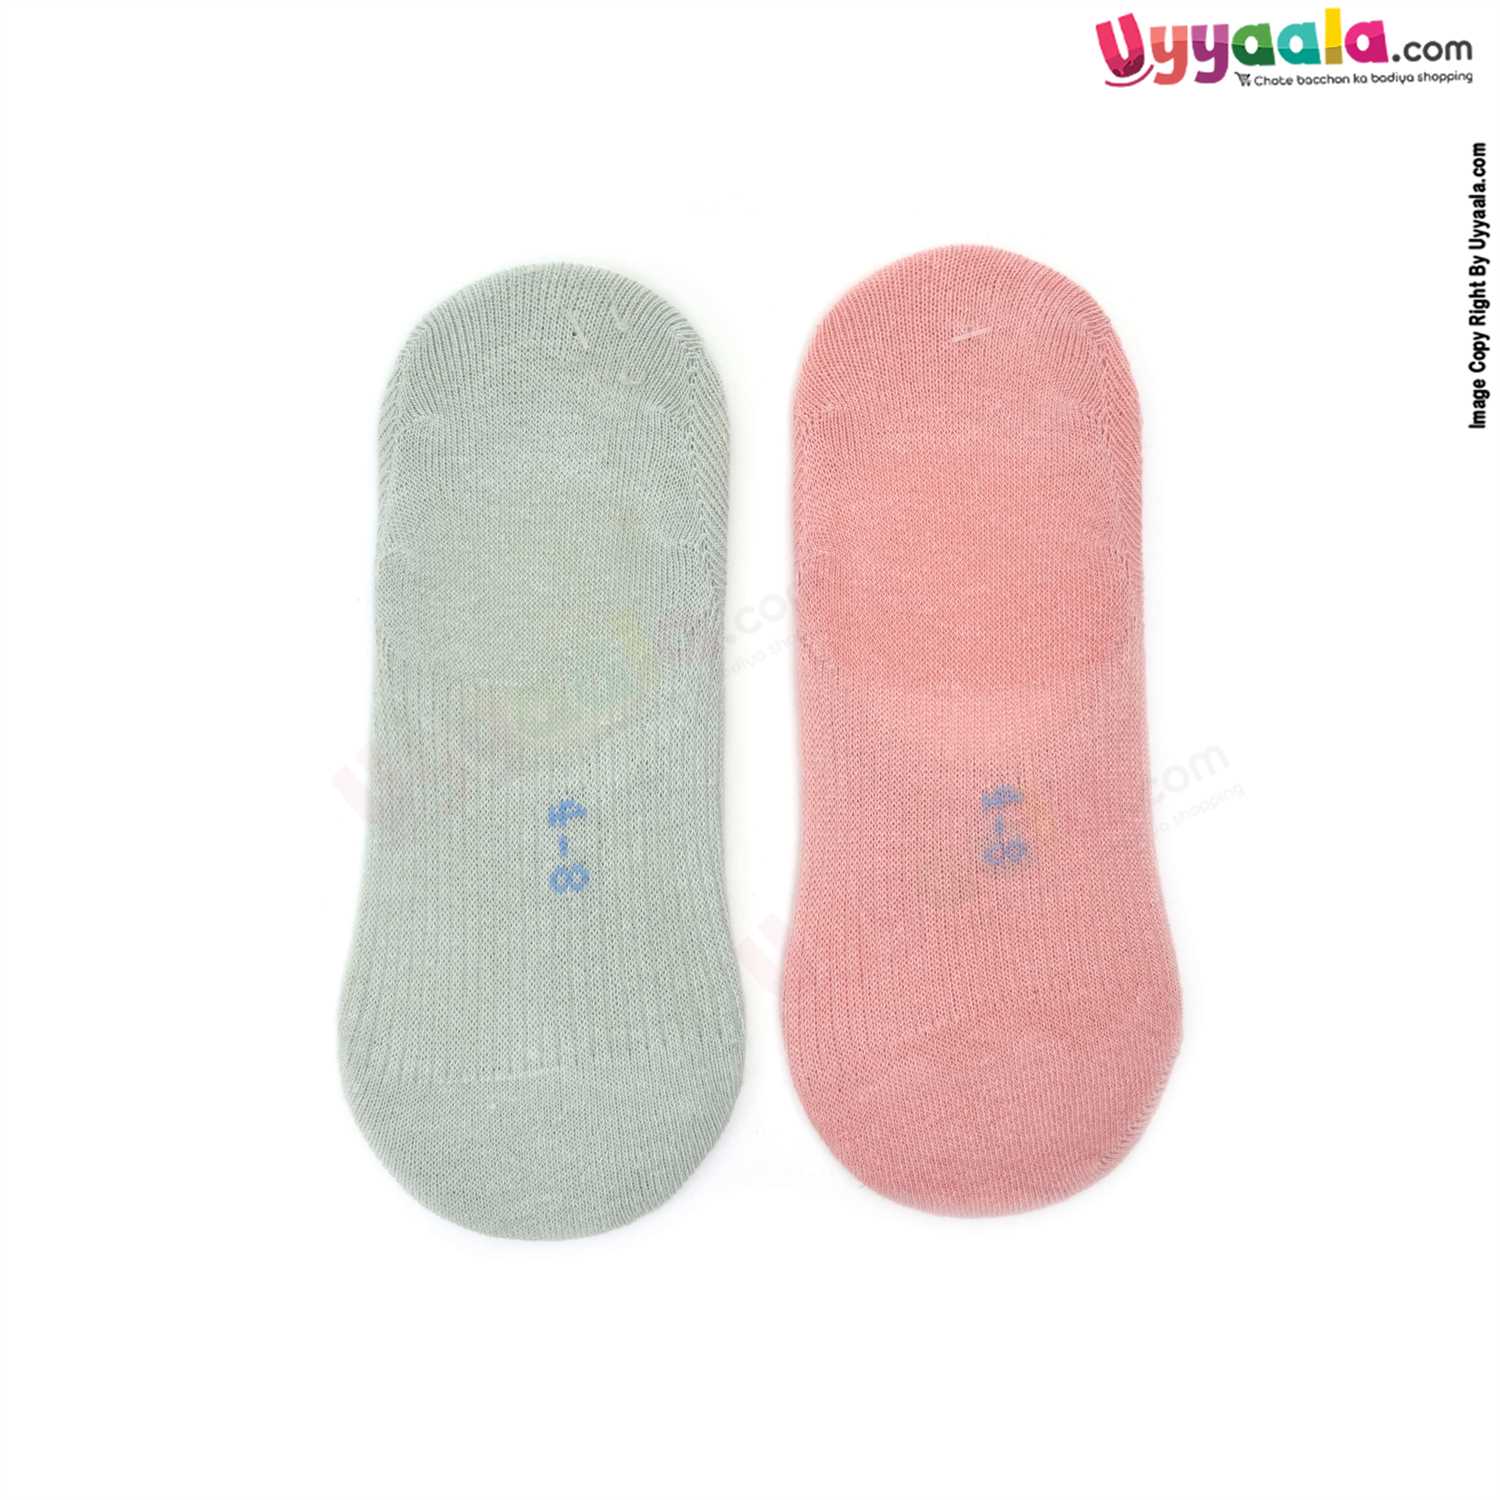 Hosiery Cotton Socks Low Cut Model Pack of 2, 4-8Y Age - Light Pink & Light Green